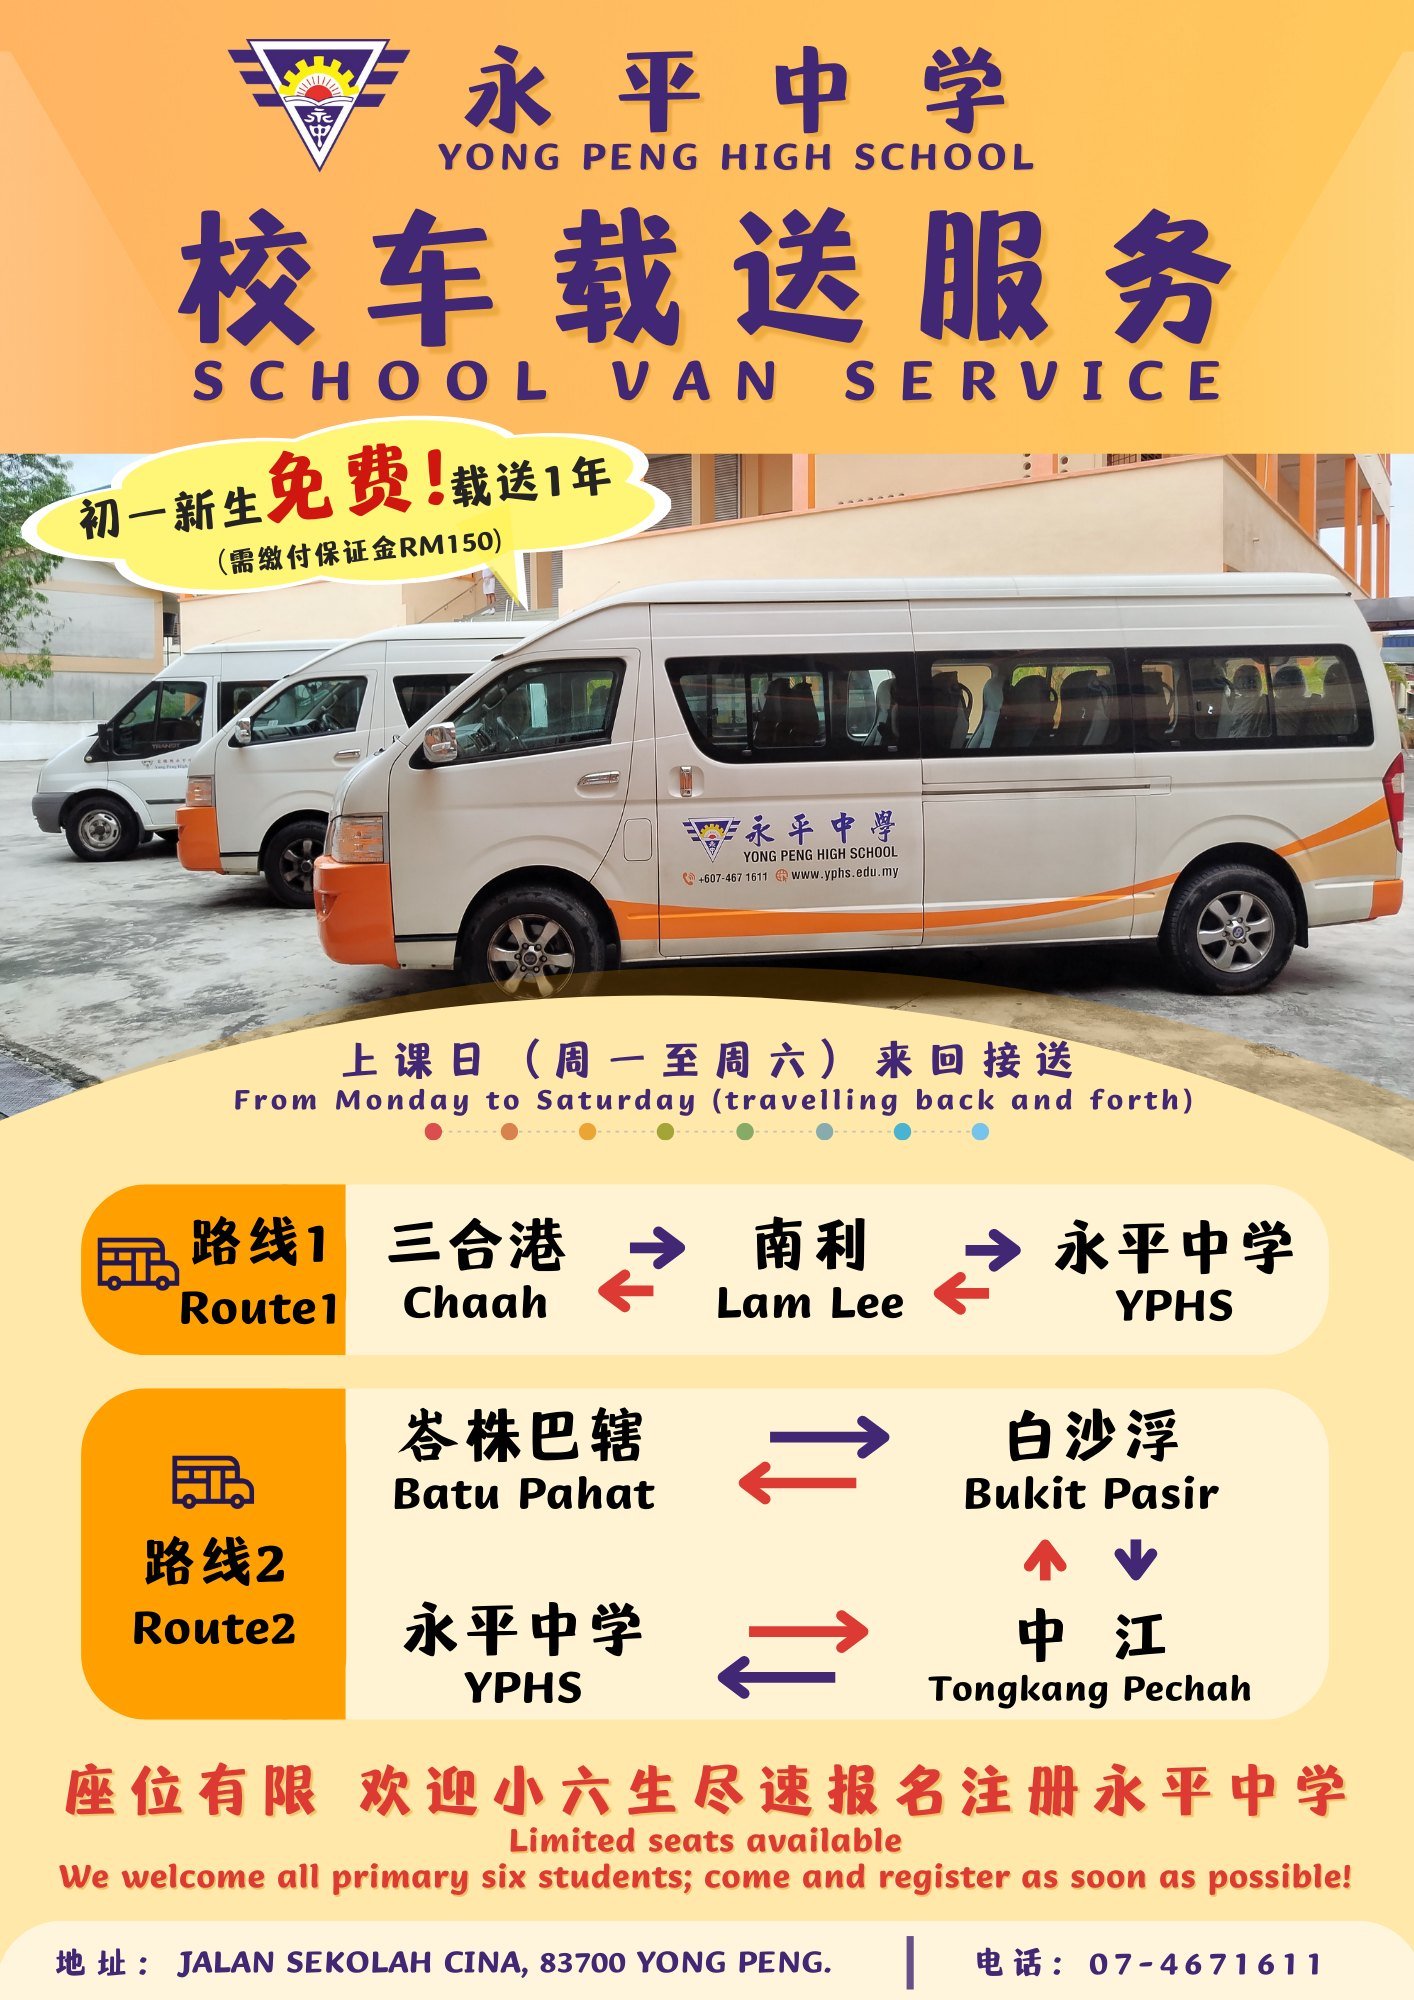 永平中学为周边乡镇的初一新生提供校车载送服务，为期一年。